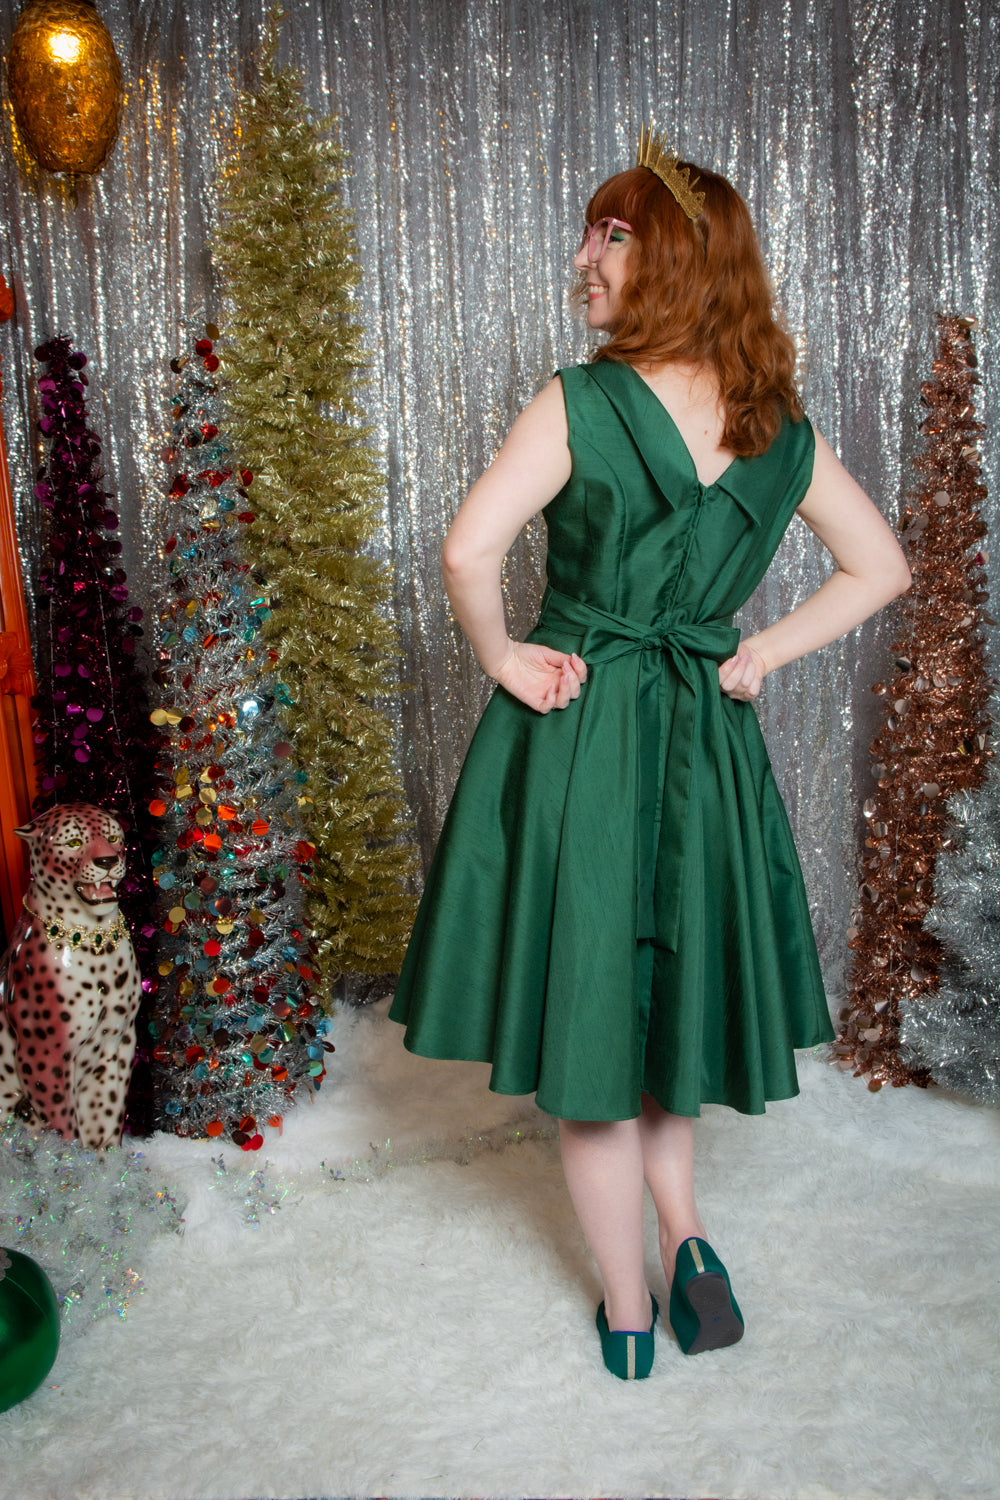 Suzette Dress - Shantung, Green